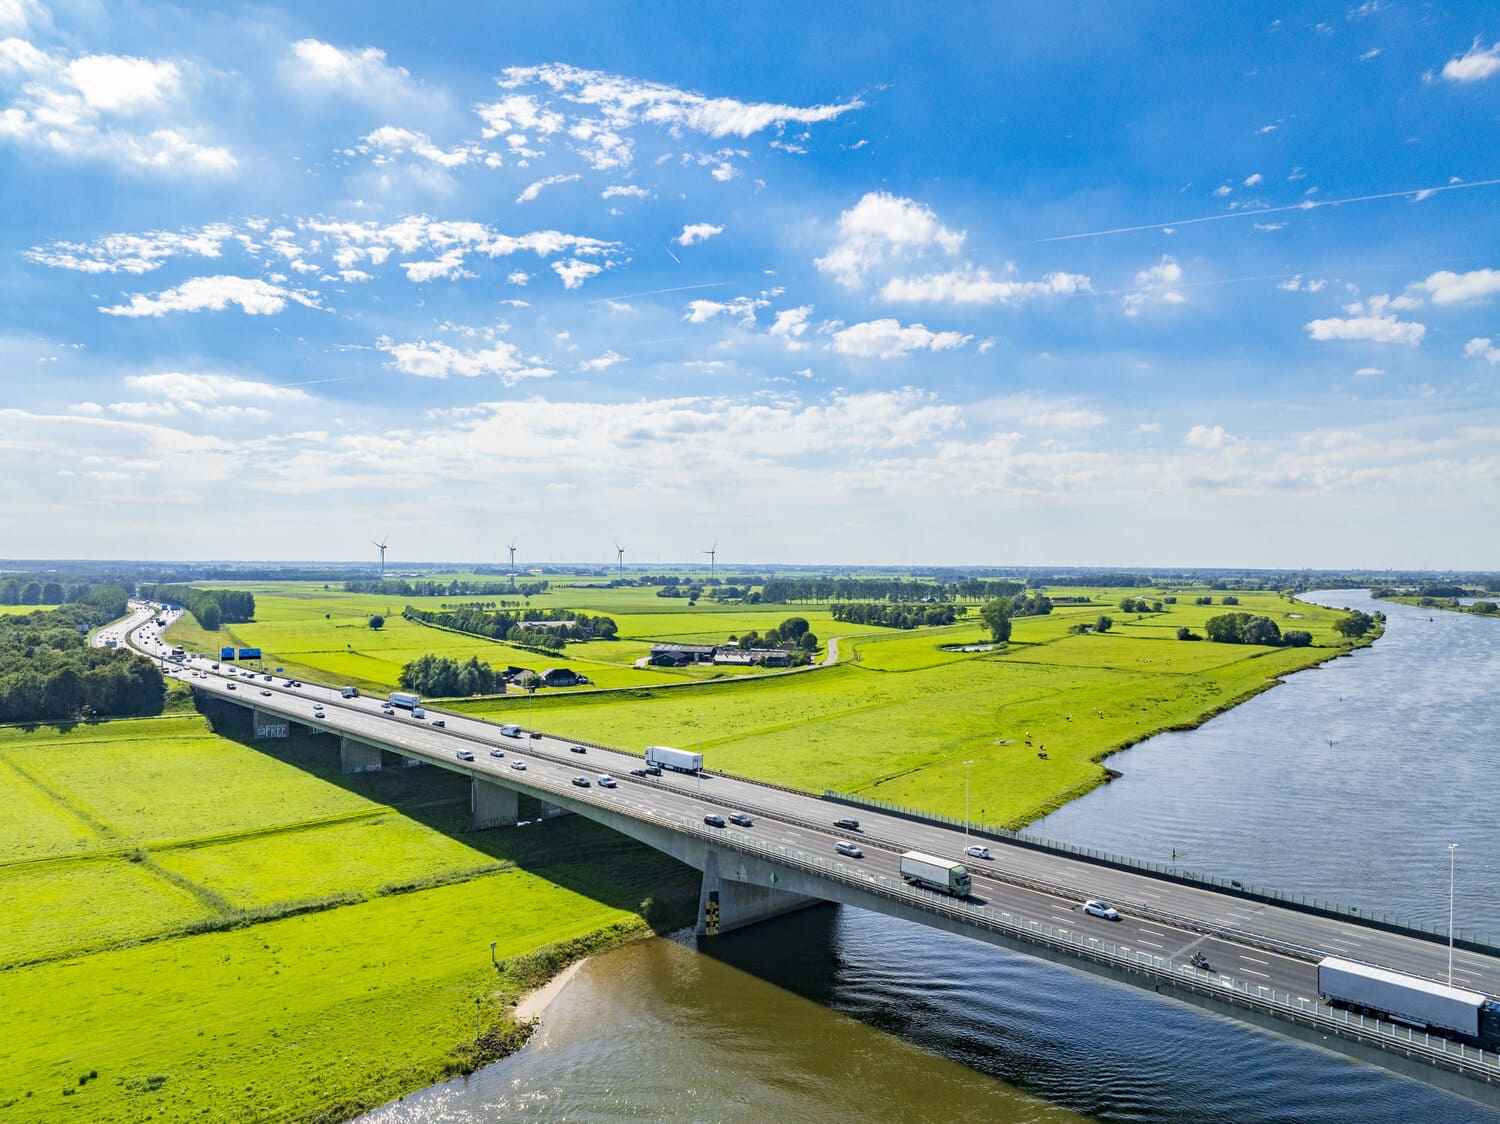 Letecký pohled na holandskou krajinu s dlouhým dálničním mostem přes řeku. Most je obklopen svěžími zelenými poli a zemědělskou půdou. Po mostě je vidět jízda aut.